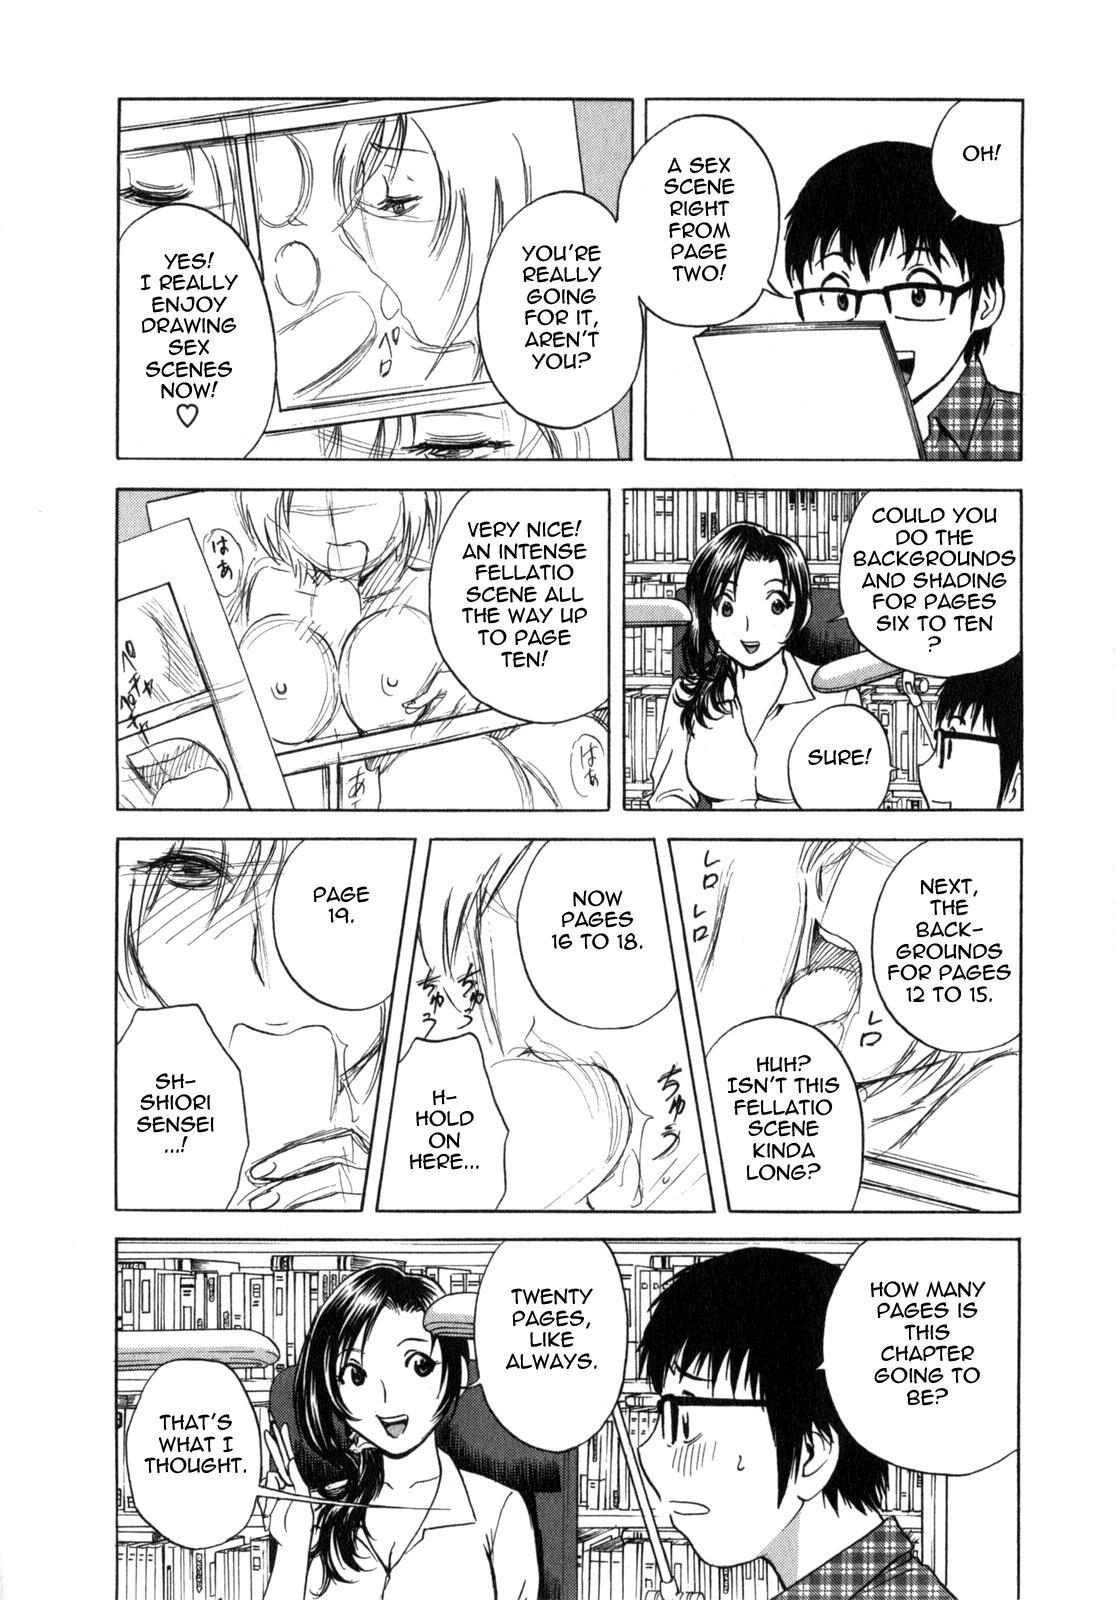 Manga no youna Hitozuma to no Hibi - Days with Married Women such as Comics. 48